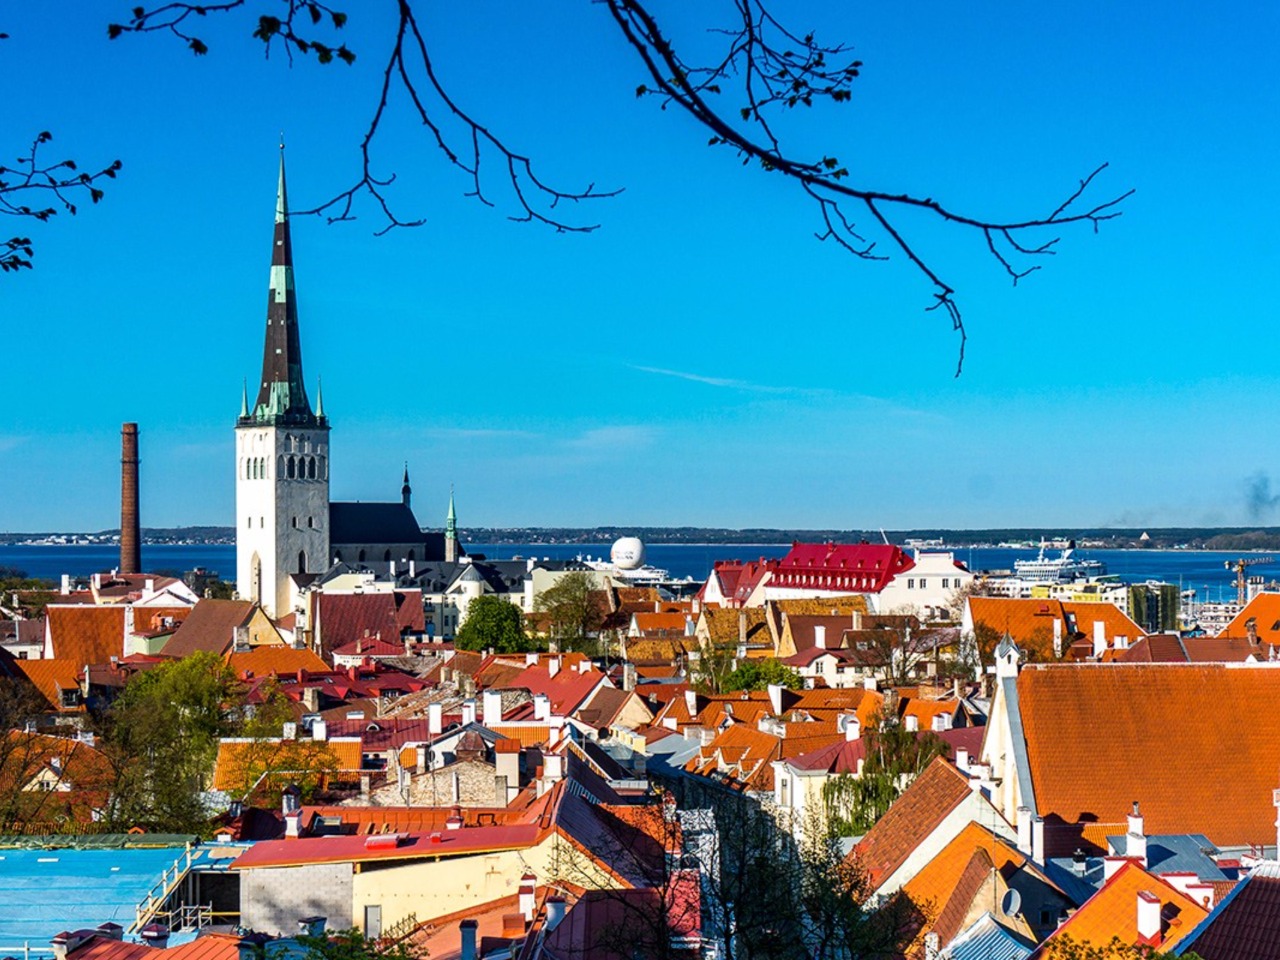  Таллин: средневековый город на берегу моря | Цена 80€, отзывы, описание экскурсии